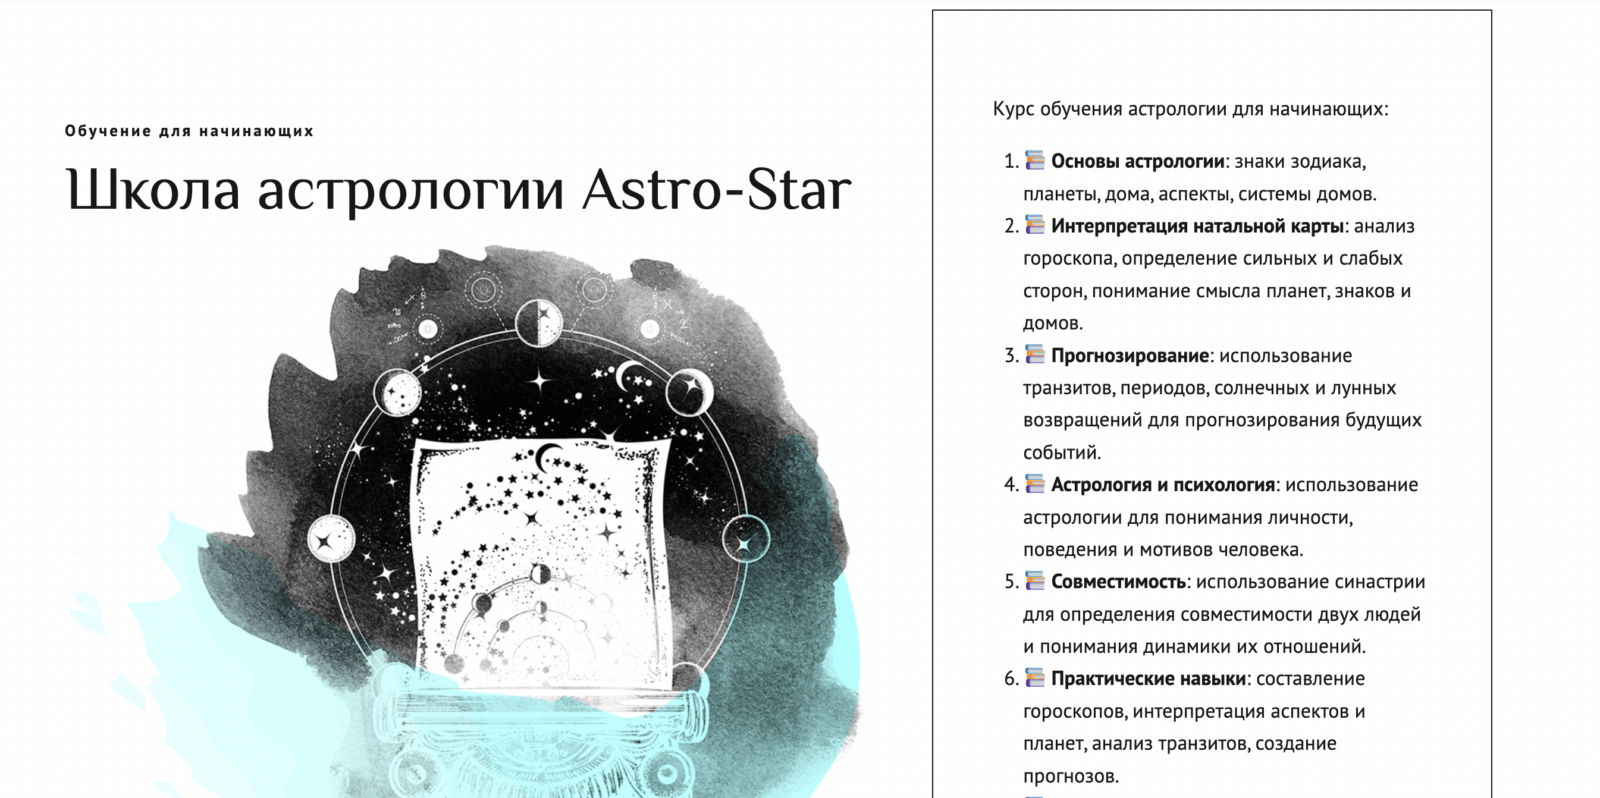 Обучение от команды AstroStar